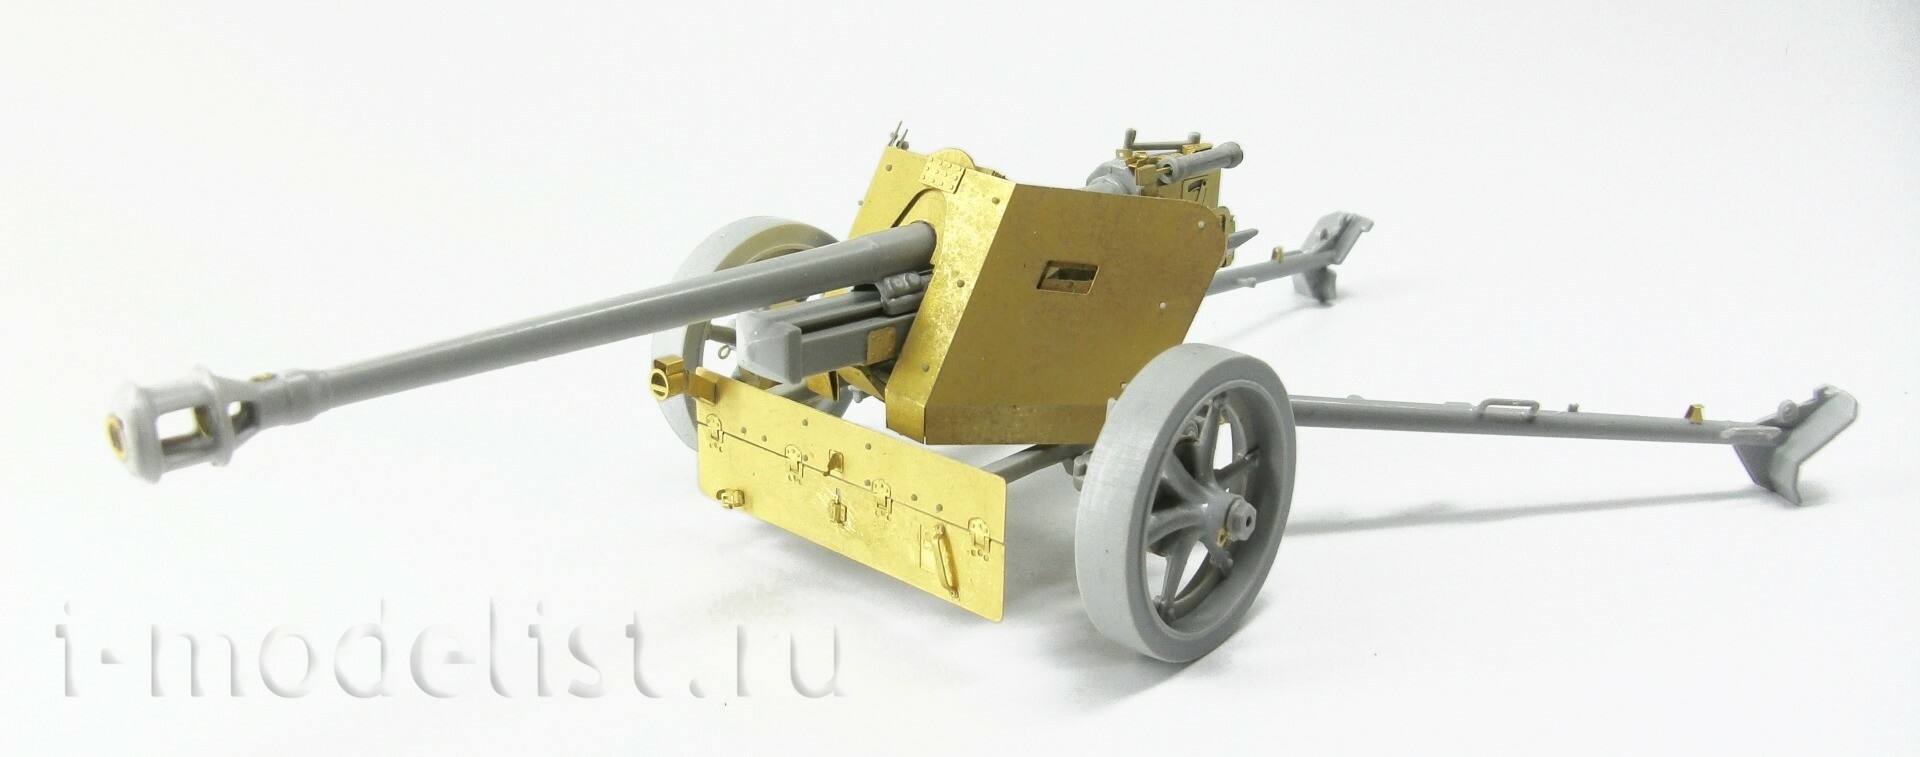 035534 Micro Design 1/35 Photo Etching Kit for Pak-40 Anti-tank gun (Zvezda)